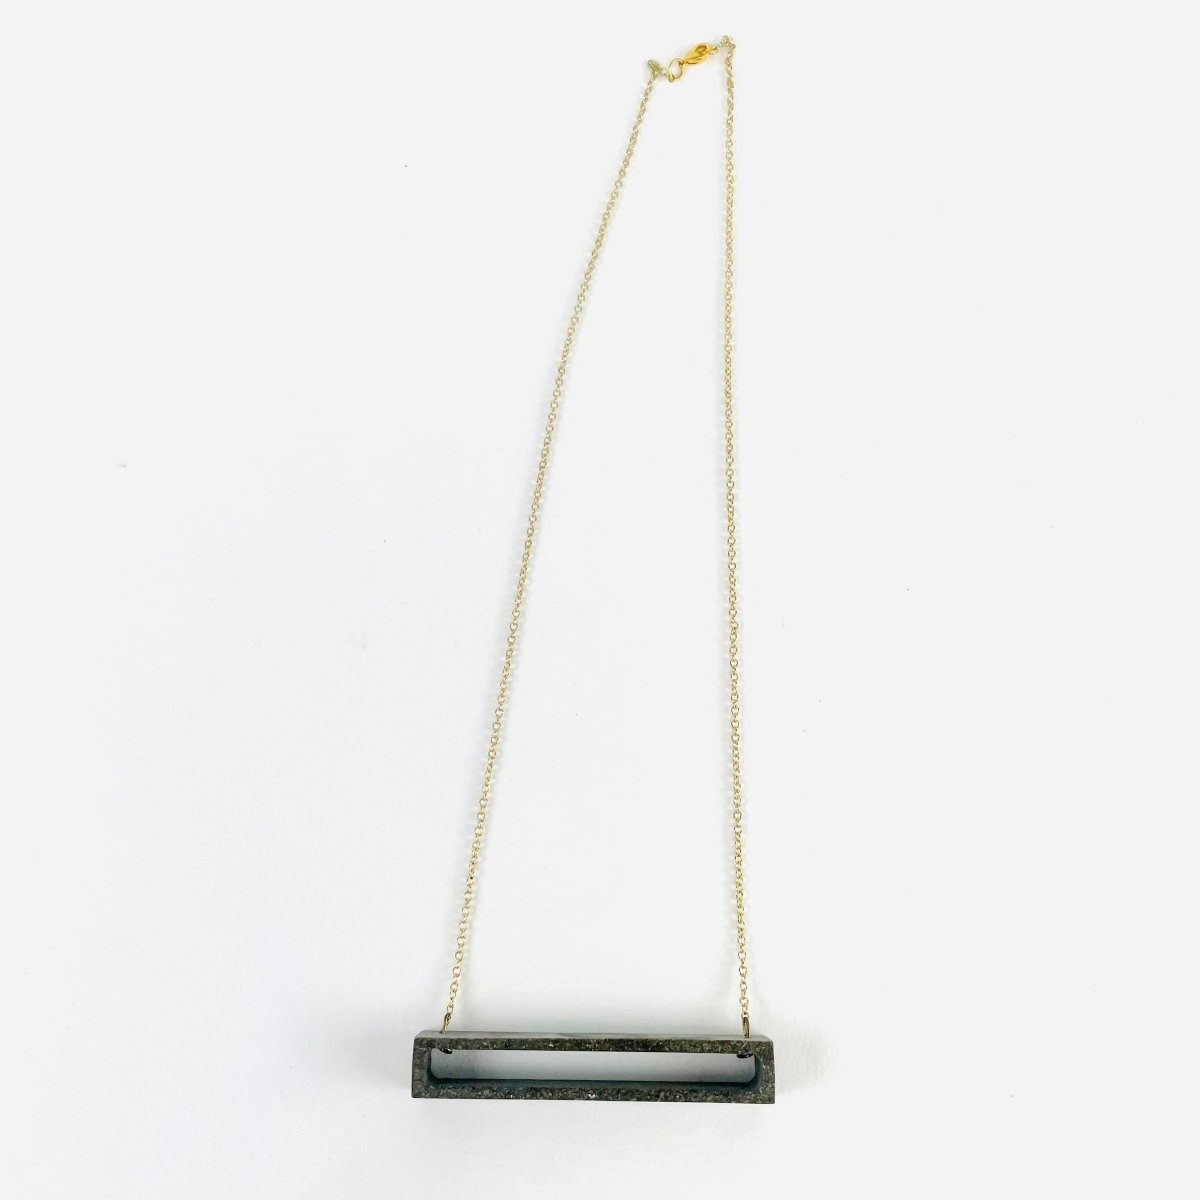 Concrete Pendant on Chain Necklace - Hart & Hive